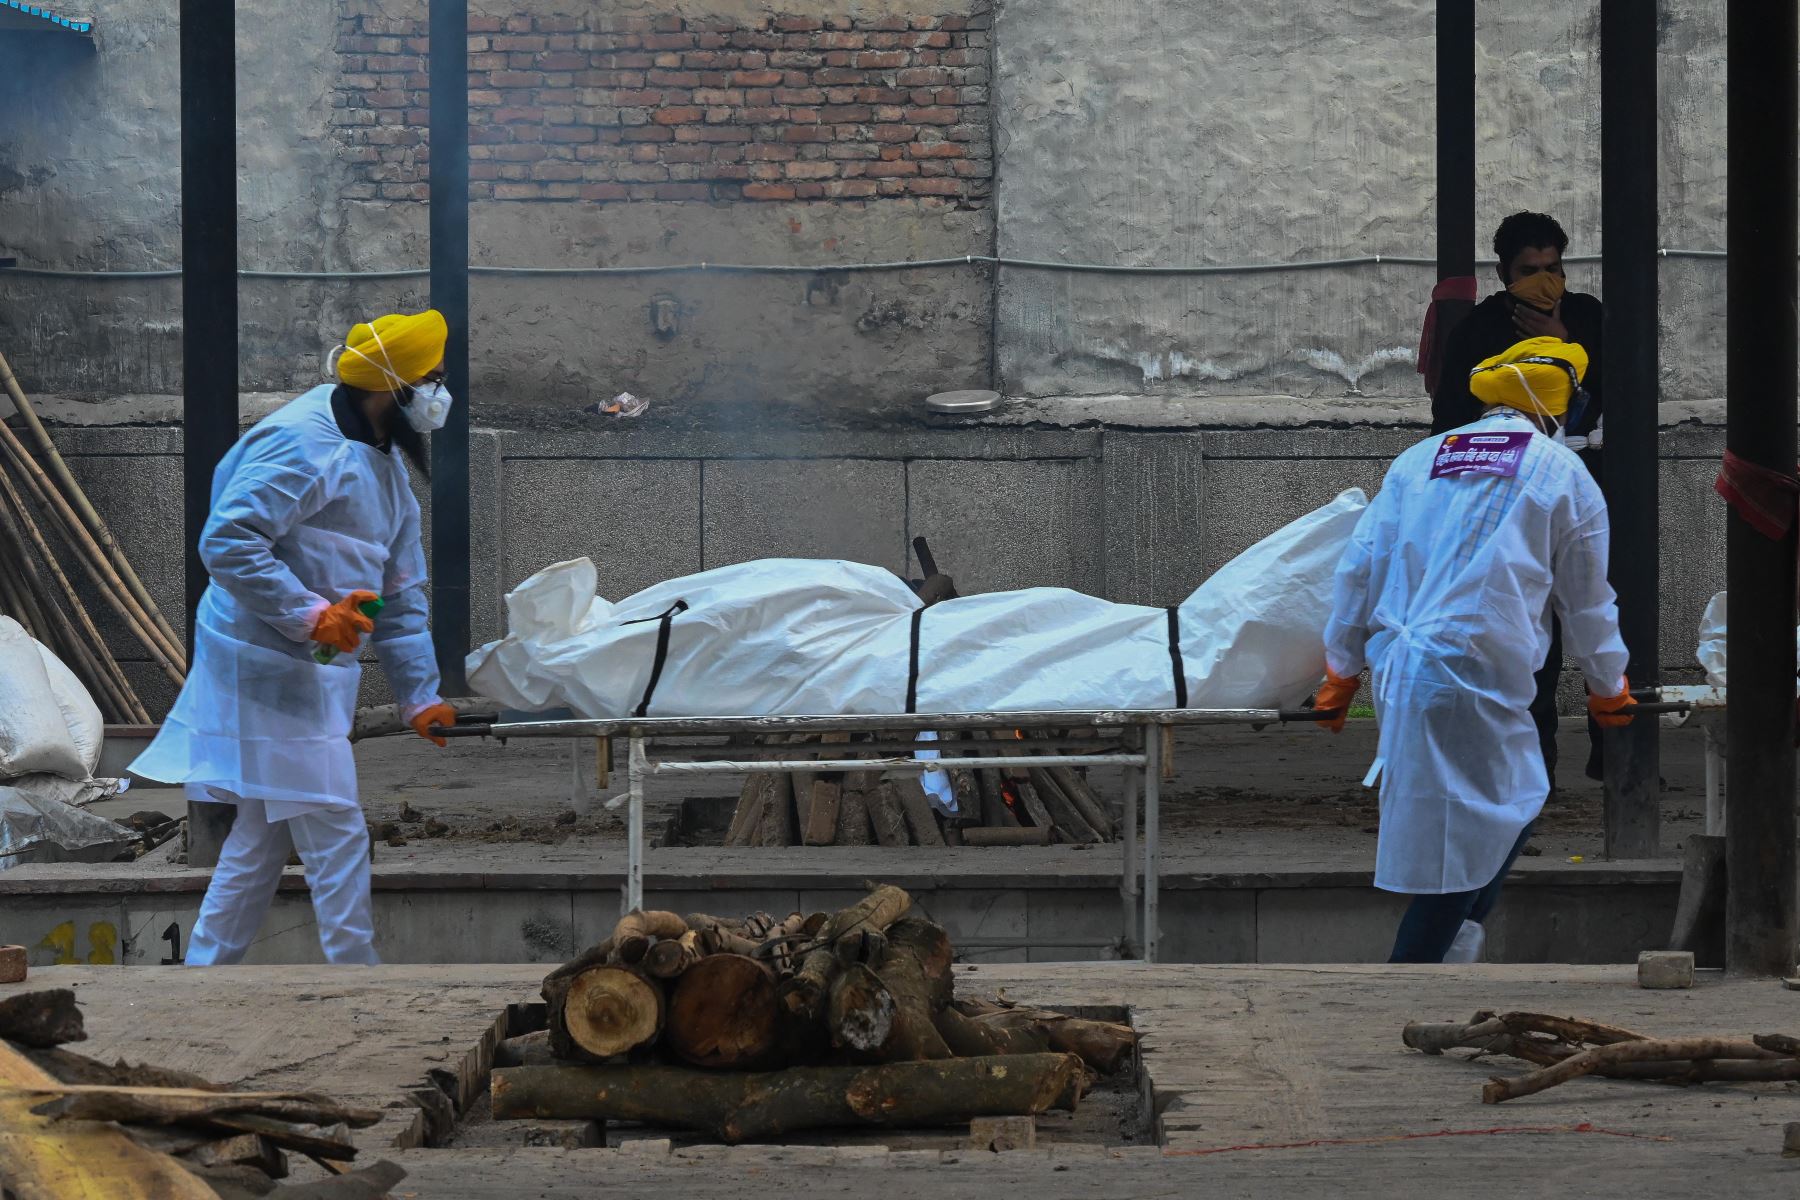 Voluntarios en equipo de protección personal llevan en una camilla el cuerpo de una persona que murió a causa del coronavirus Covid-19, en un crematorio en Nueva Delhi. Foto: AFP